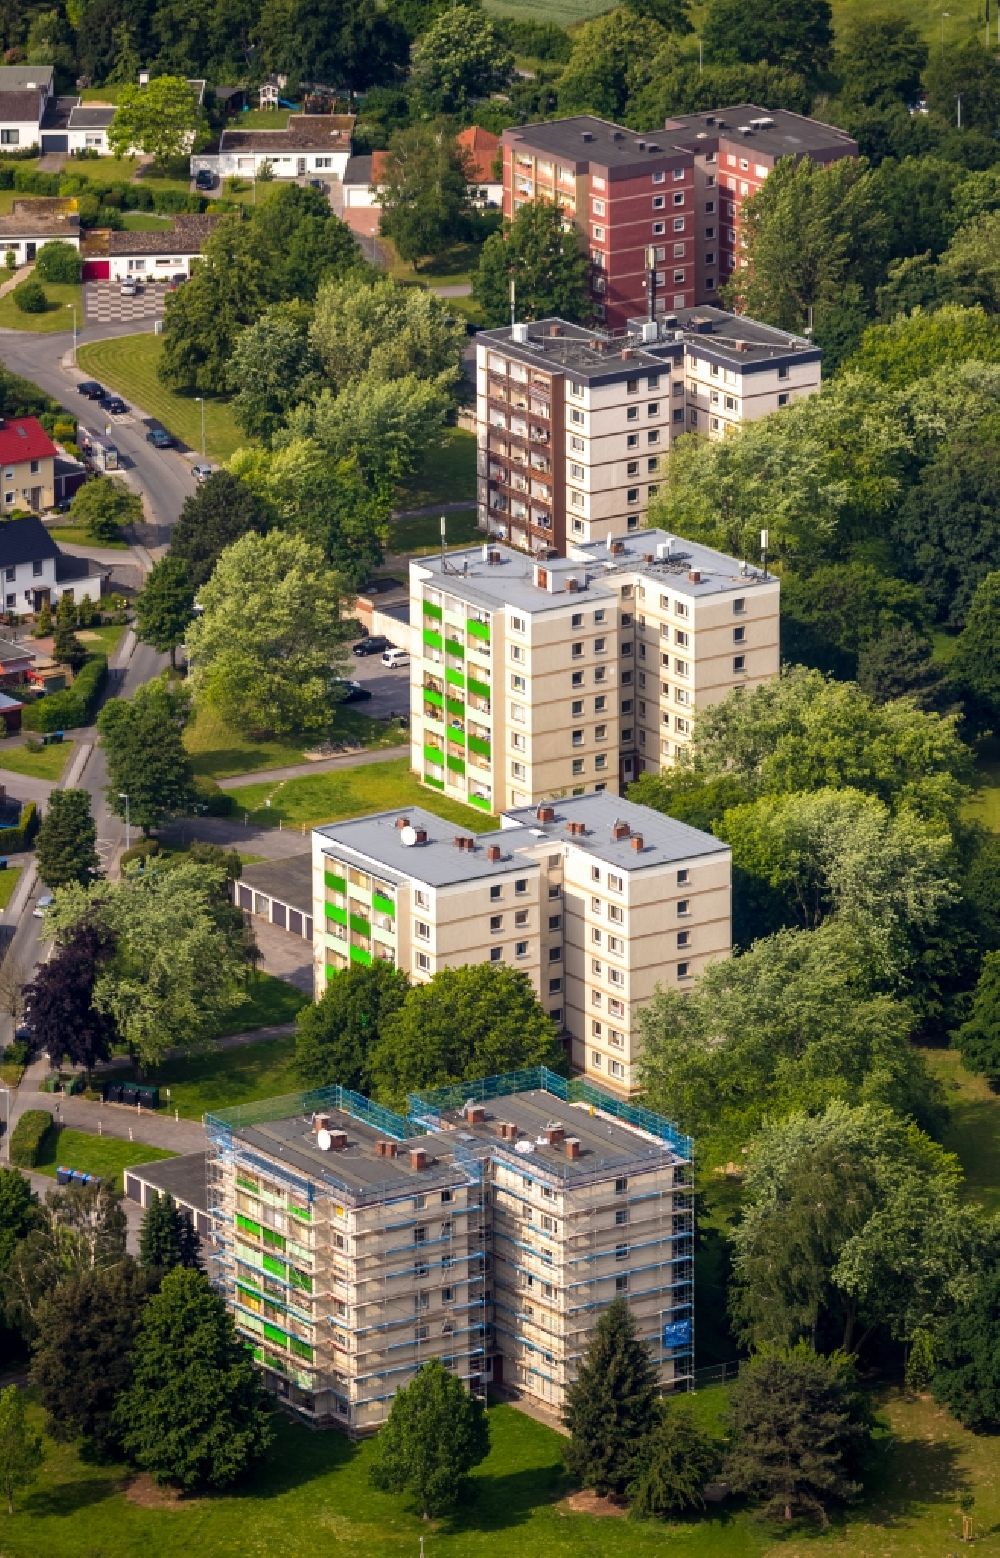 Soest aus der Vogelperspektive: Plattenbau- Hochhaus- Wohnsiedlung am Gotlandweg in Soest im Bundesland Nordrhein-Westfalen, Deutschland